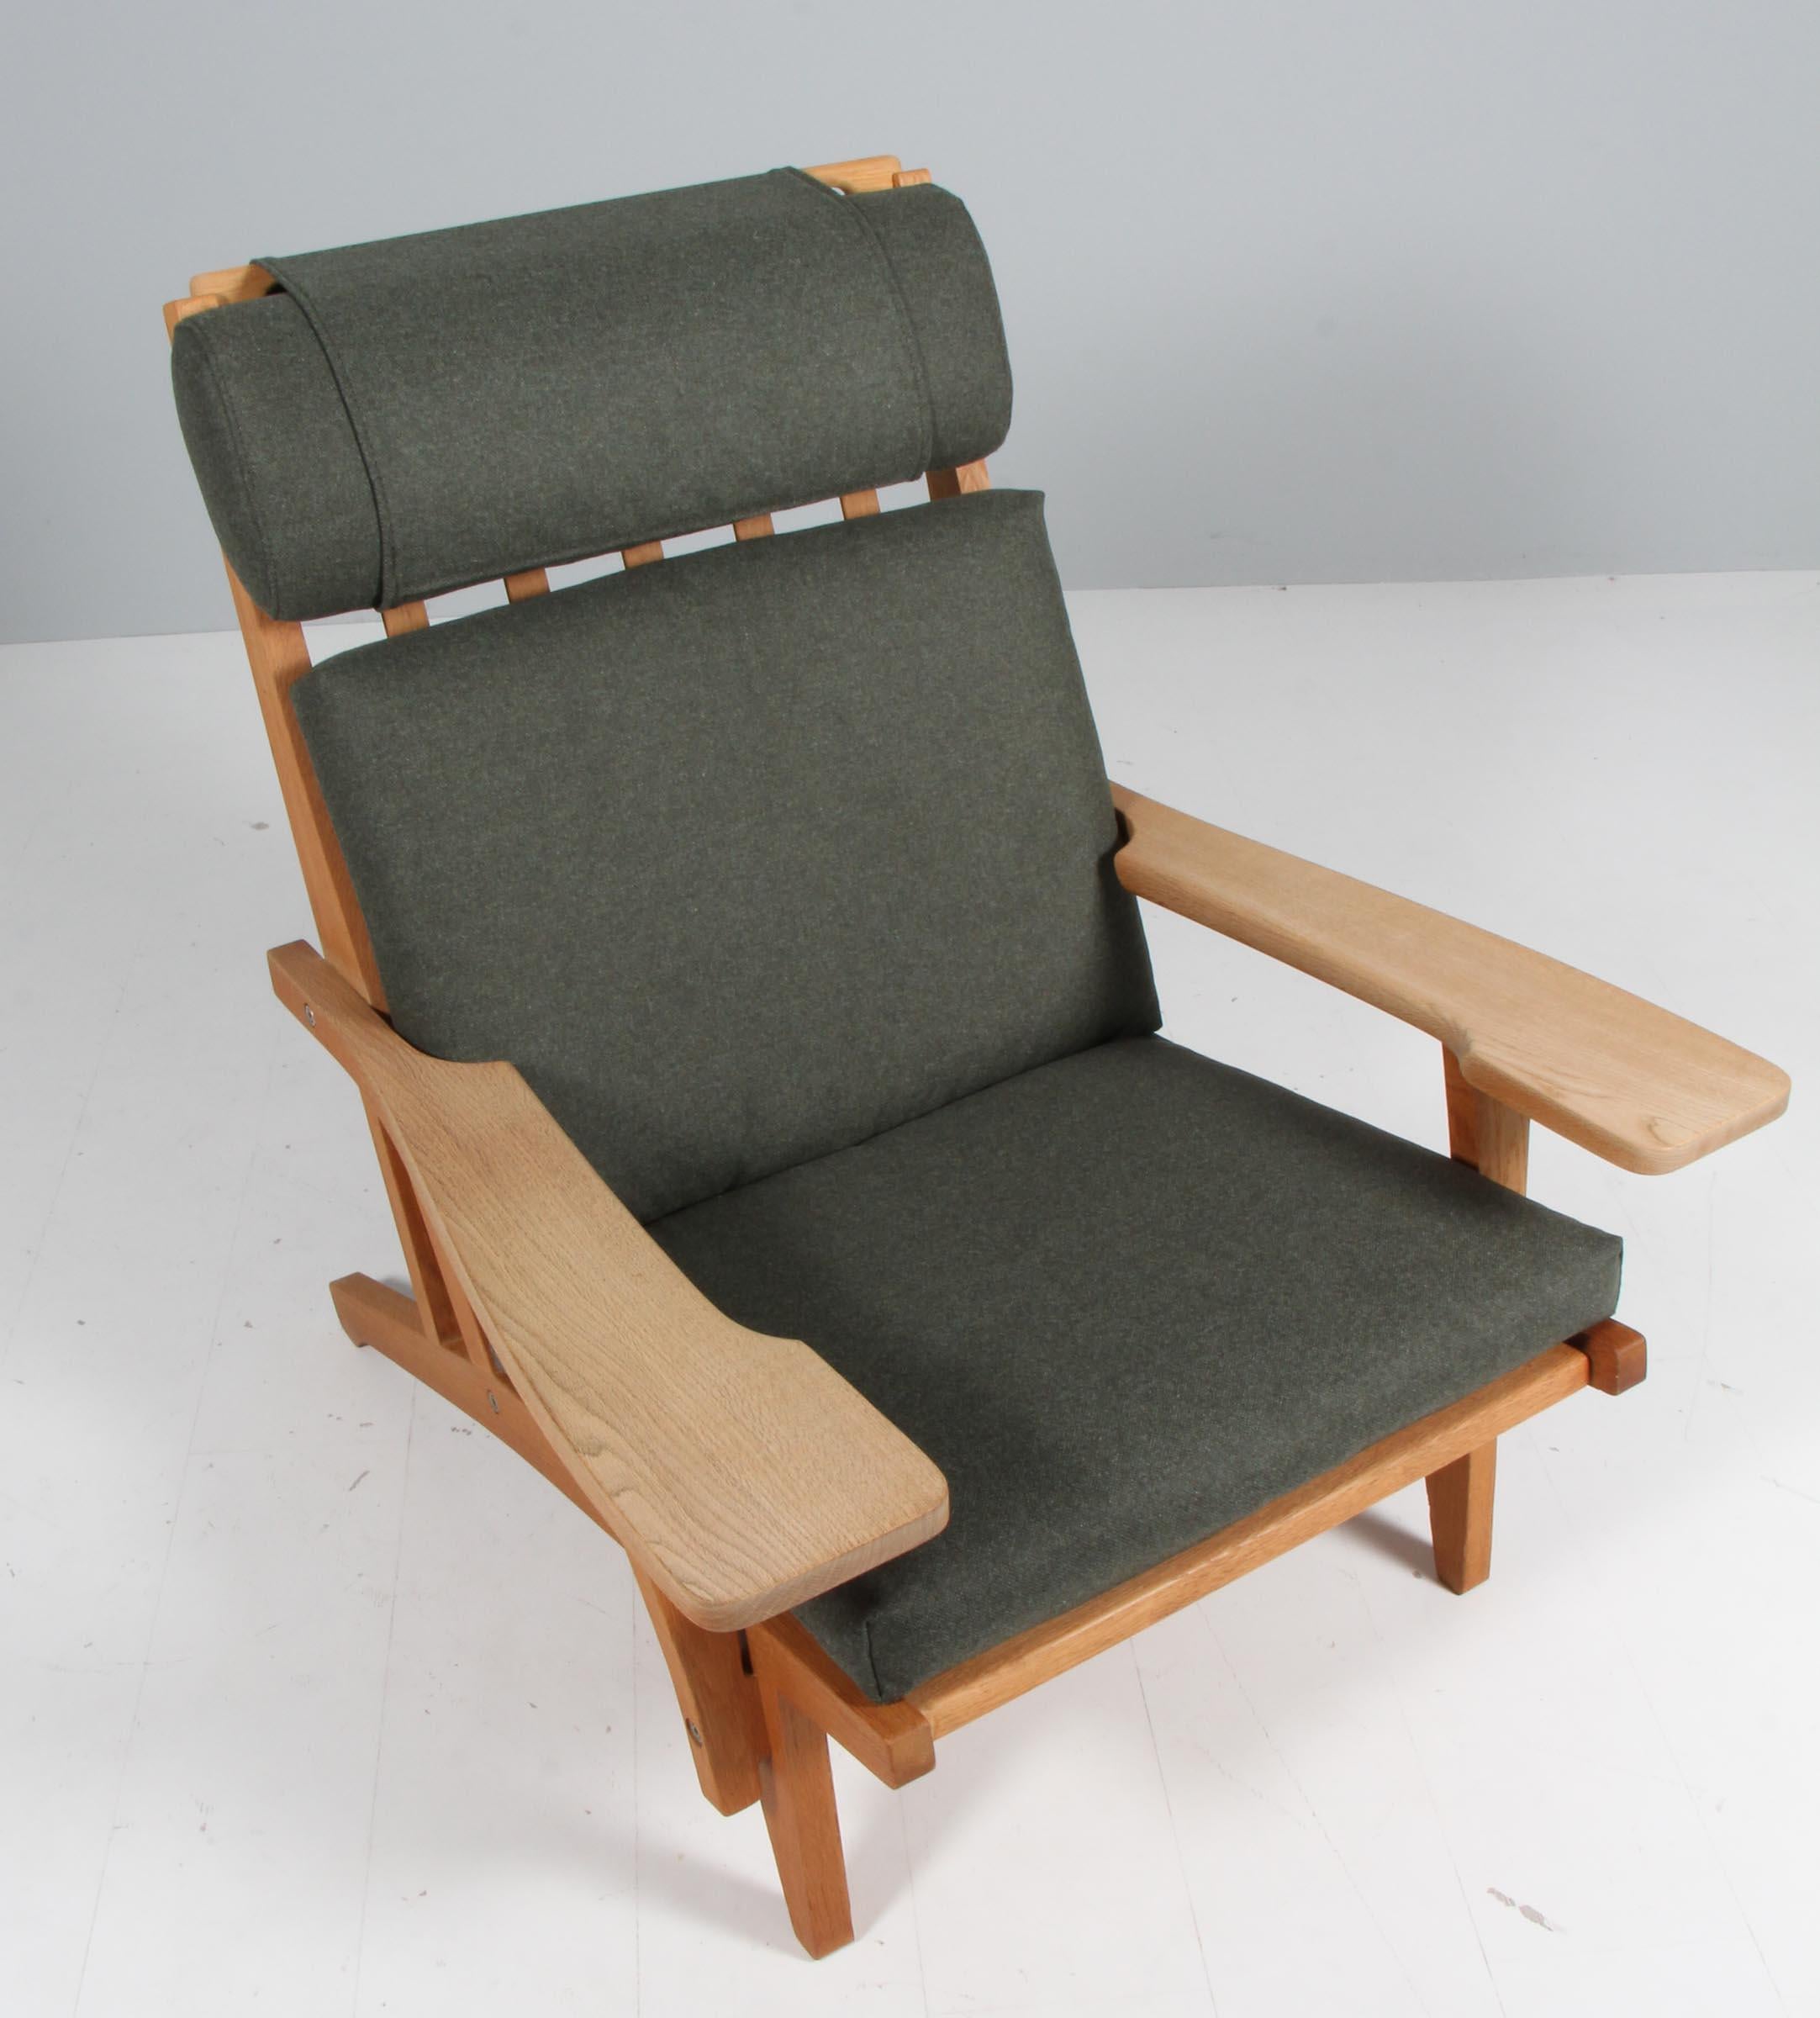 Chaise longue Hans J. Wegner avec coussins détachés, nouvellement recouverte d'un tissu en laine vert Magrethe de Nevotex.

Cadre en chêne. Avec accoudoirs.

Modèle GE-375, fabriqué par GETAMA.